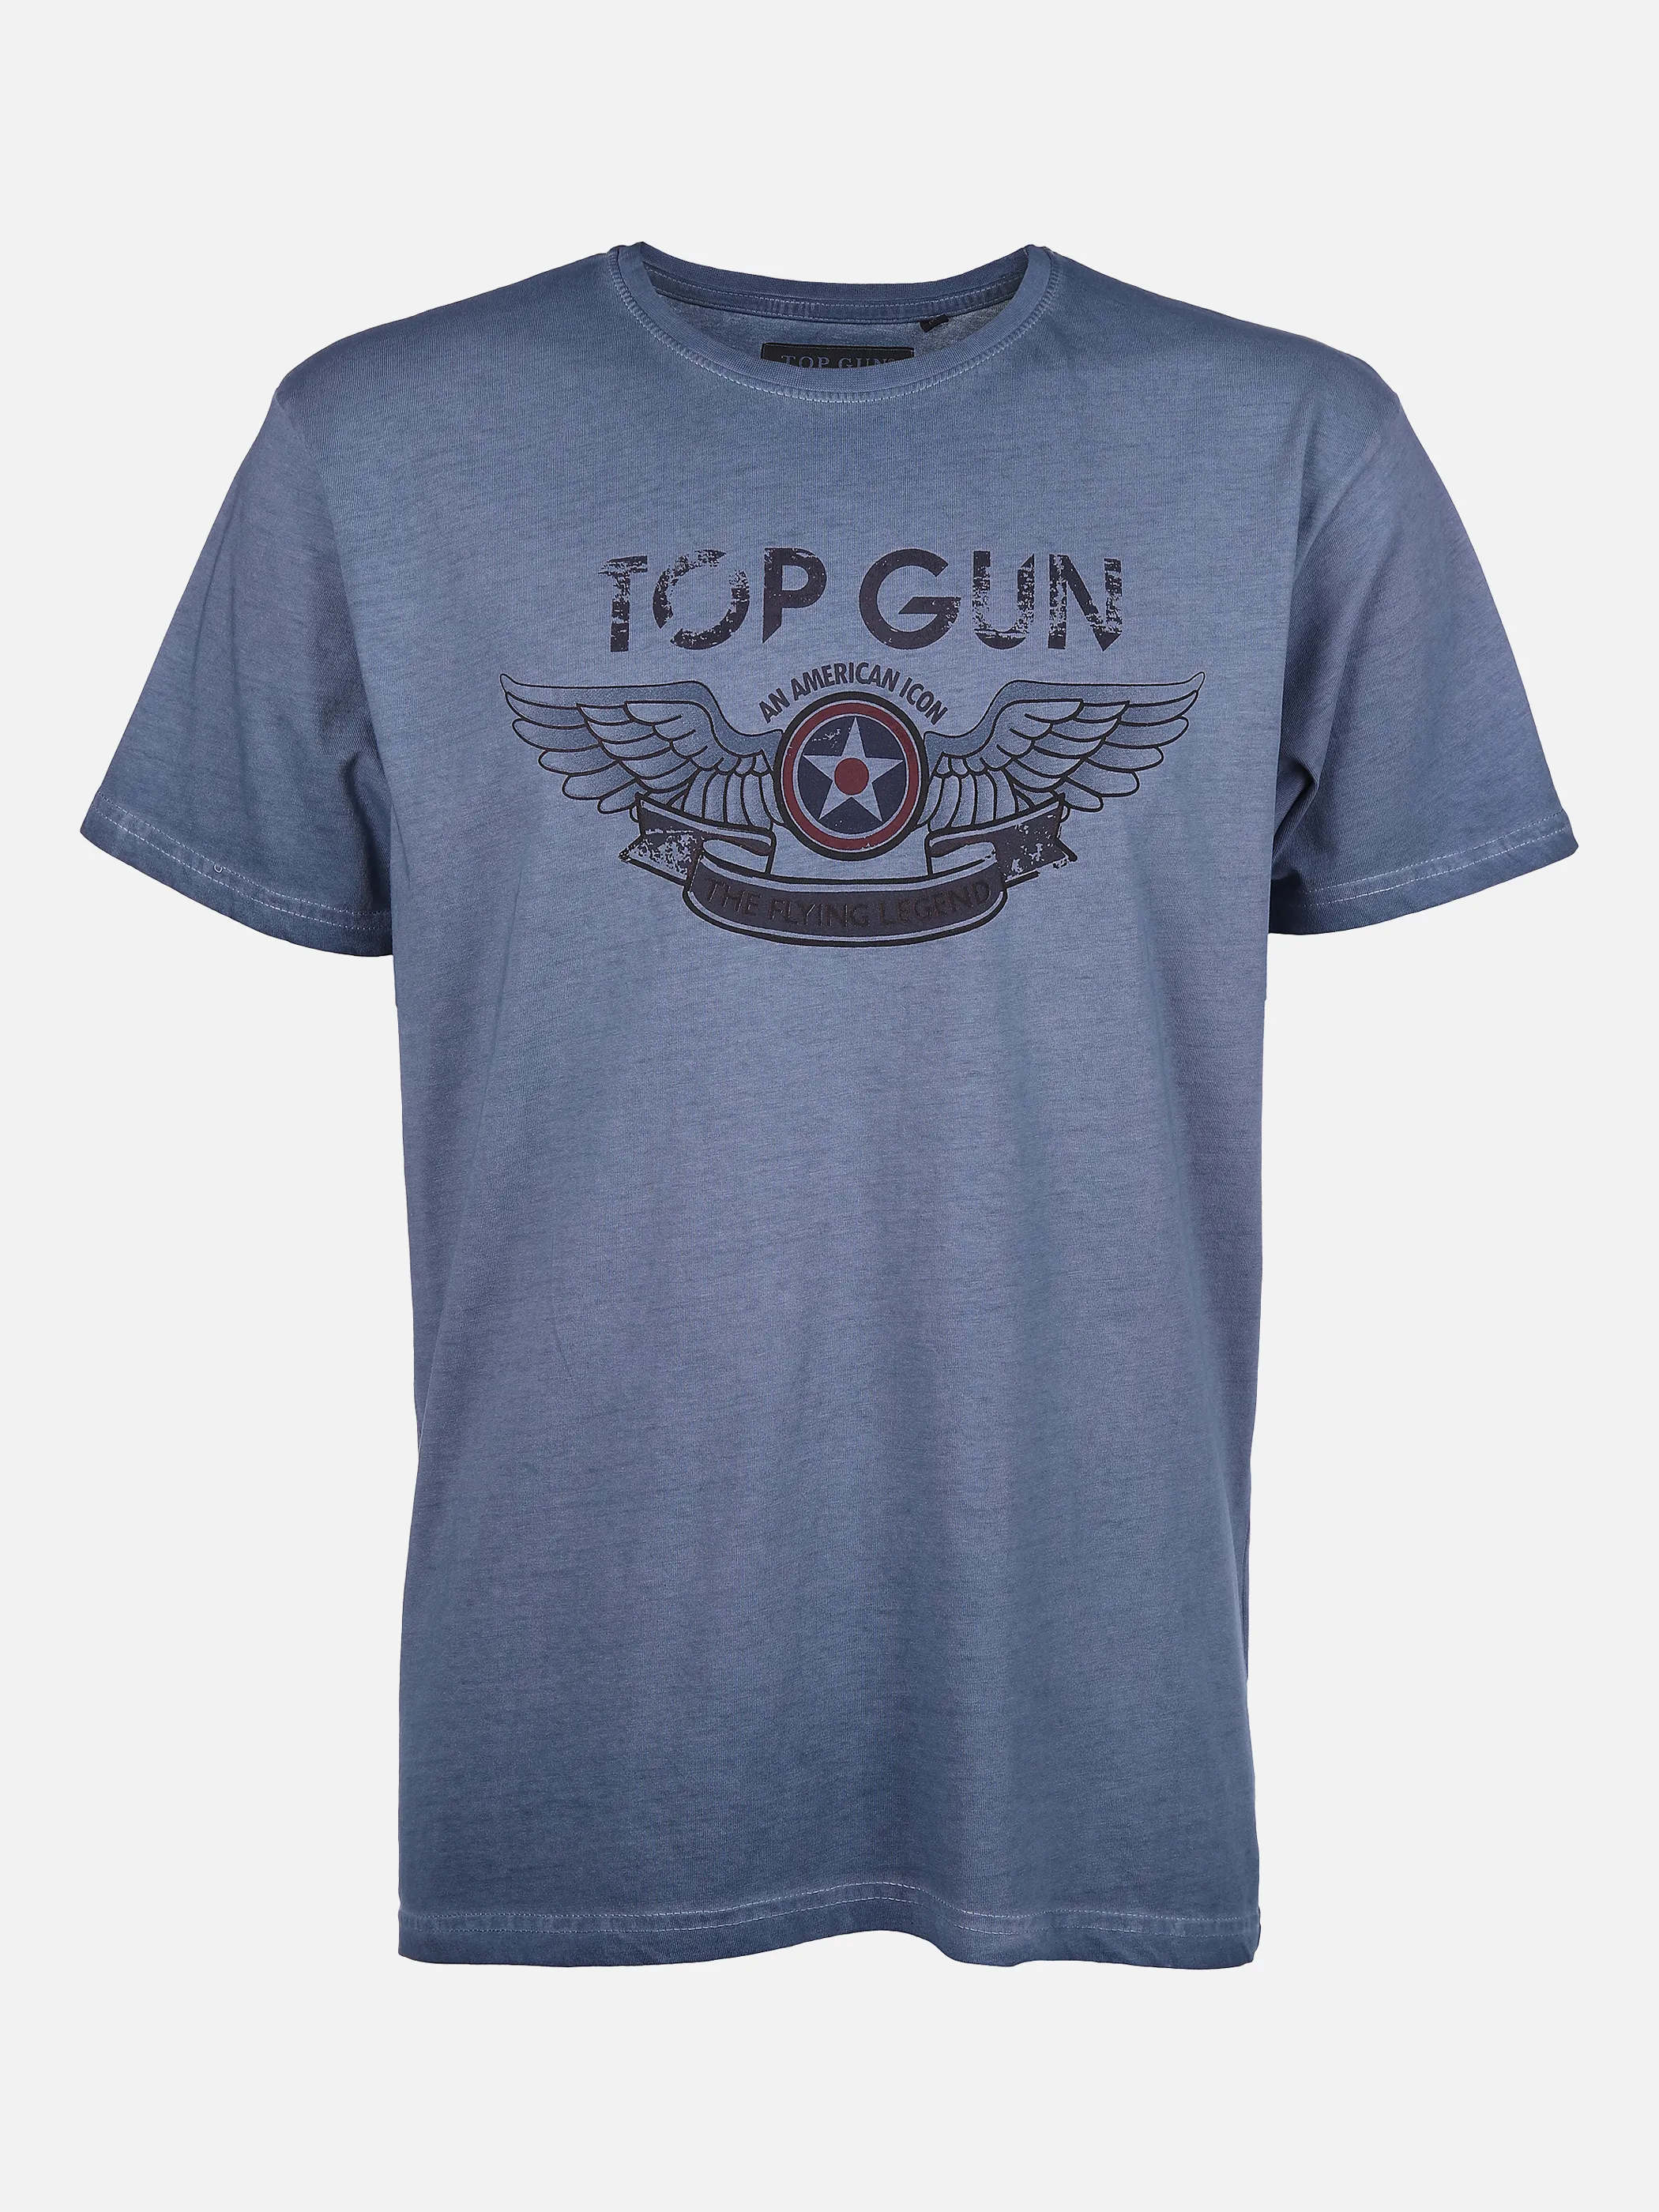 Top Gun He. T-Shirt 1/2 Arm washer Blau 864381 BLUE 1